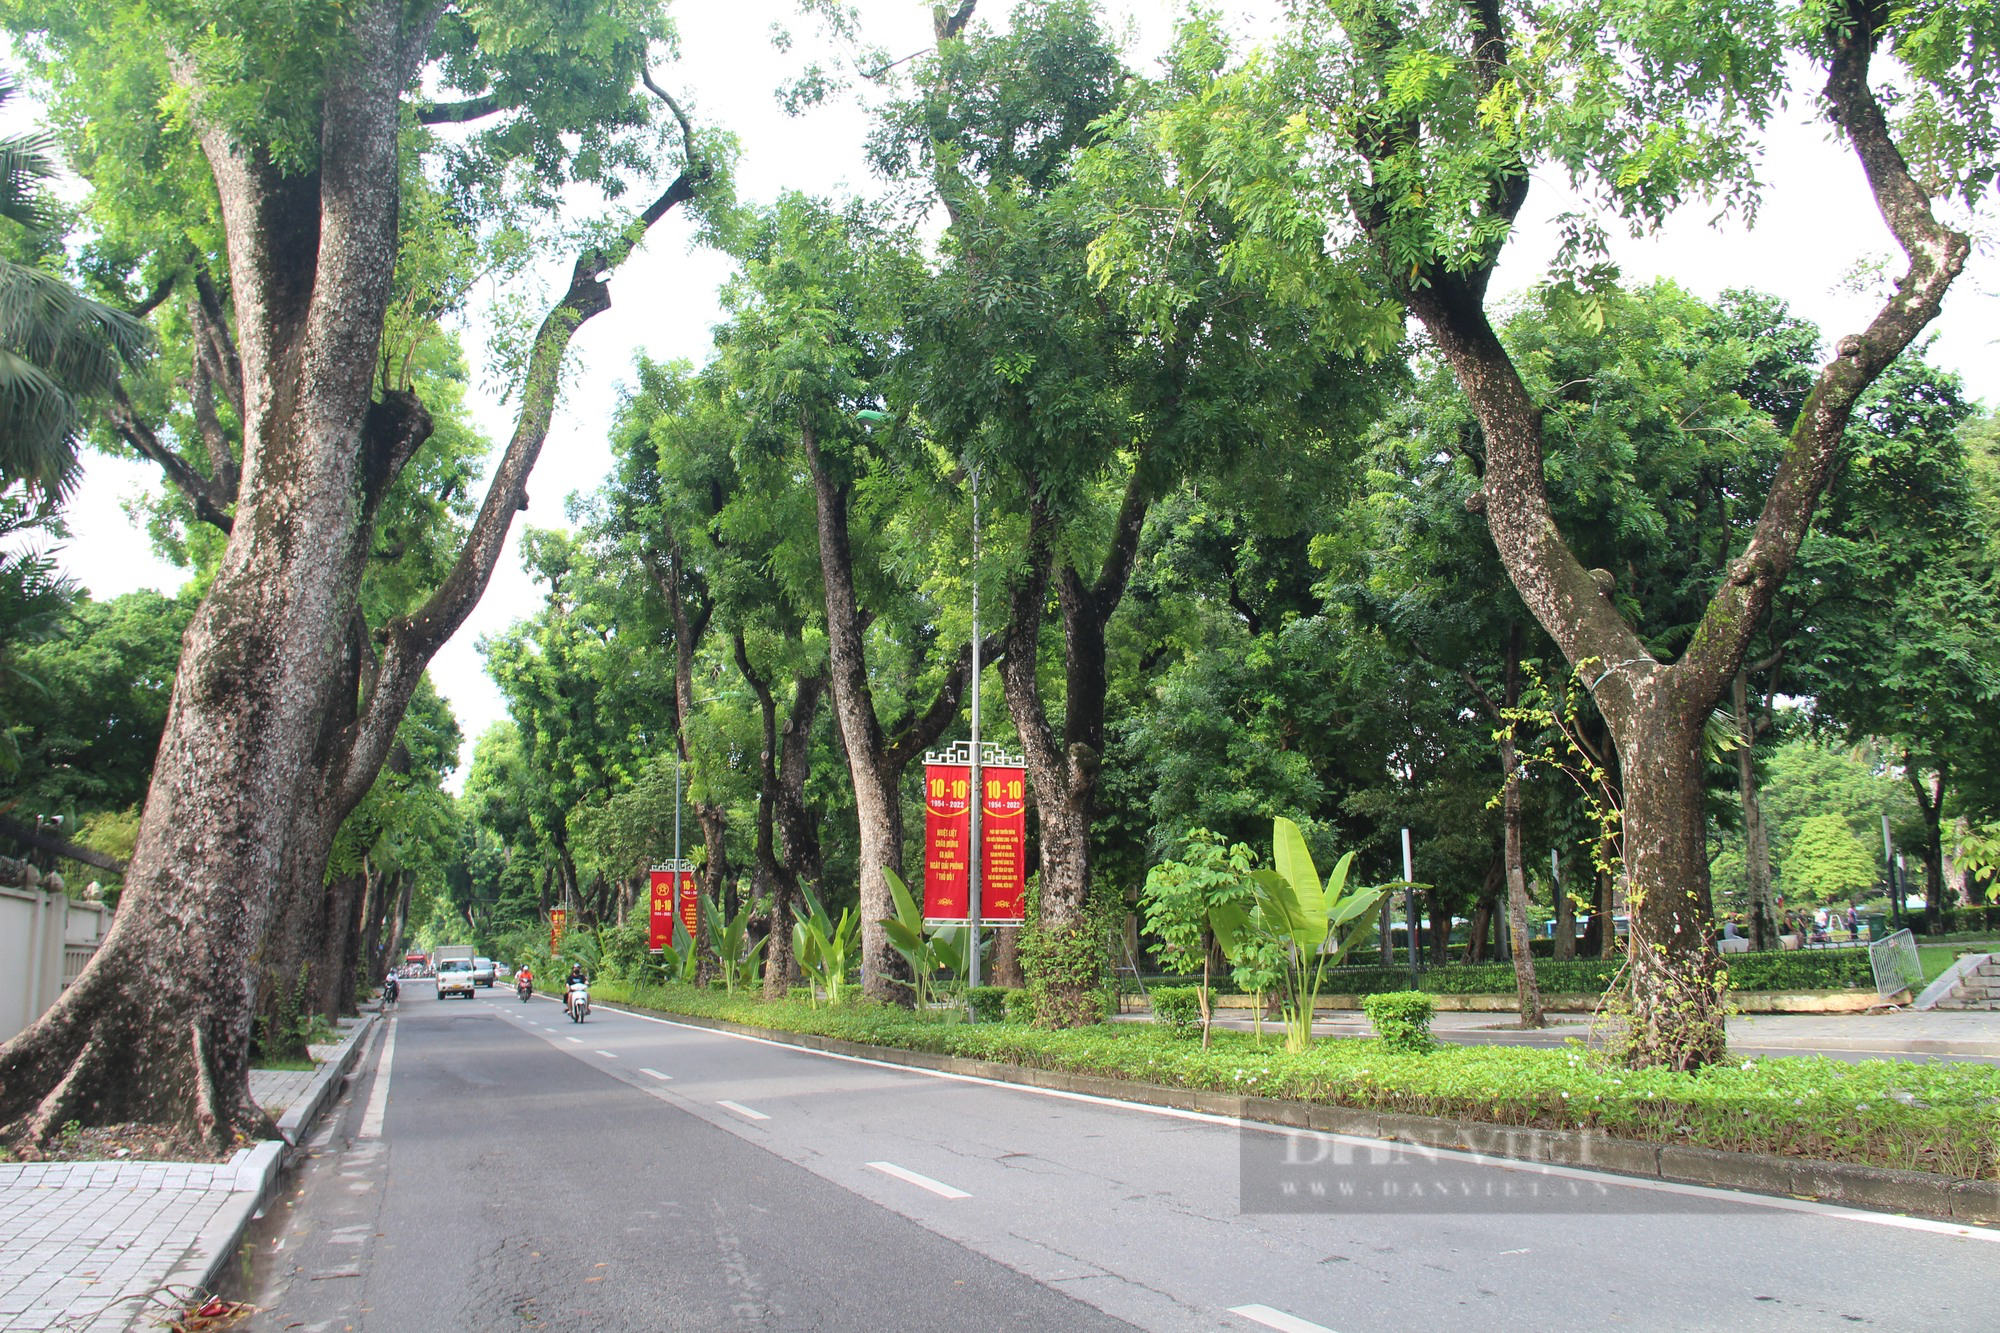 Phố cây xanh Hà Nội là nơi thơ mộng nhất của thủ đô Việt Nam. Khung cảnh yên bình với hàng cây bóng mát và không khí trong lành sẽ khiến bạn cảm thấy thư thái sau những giờ phút căng thẳng. Hãy nhấp chuột xem bức ảnh mang đậm nét đẹp của phố cây xanh Hà Nội.